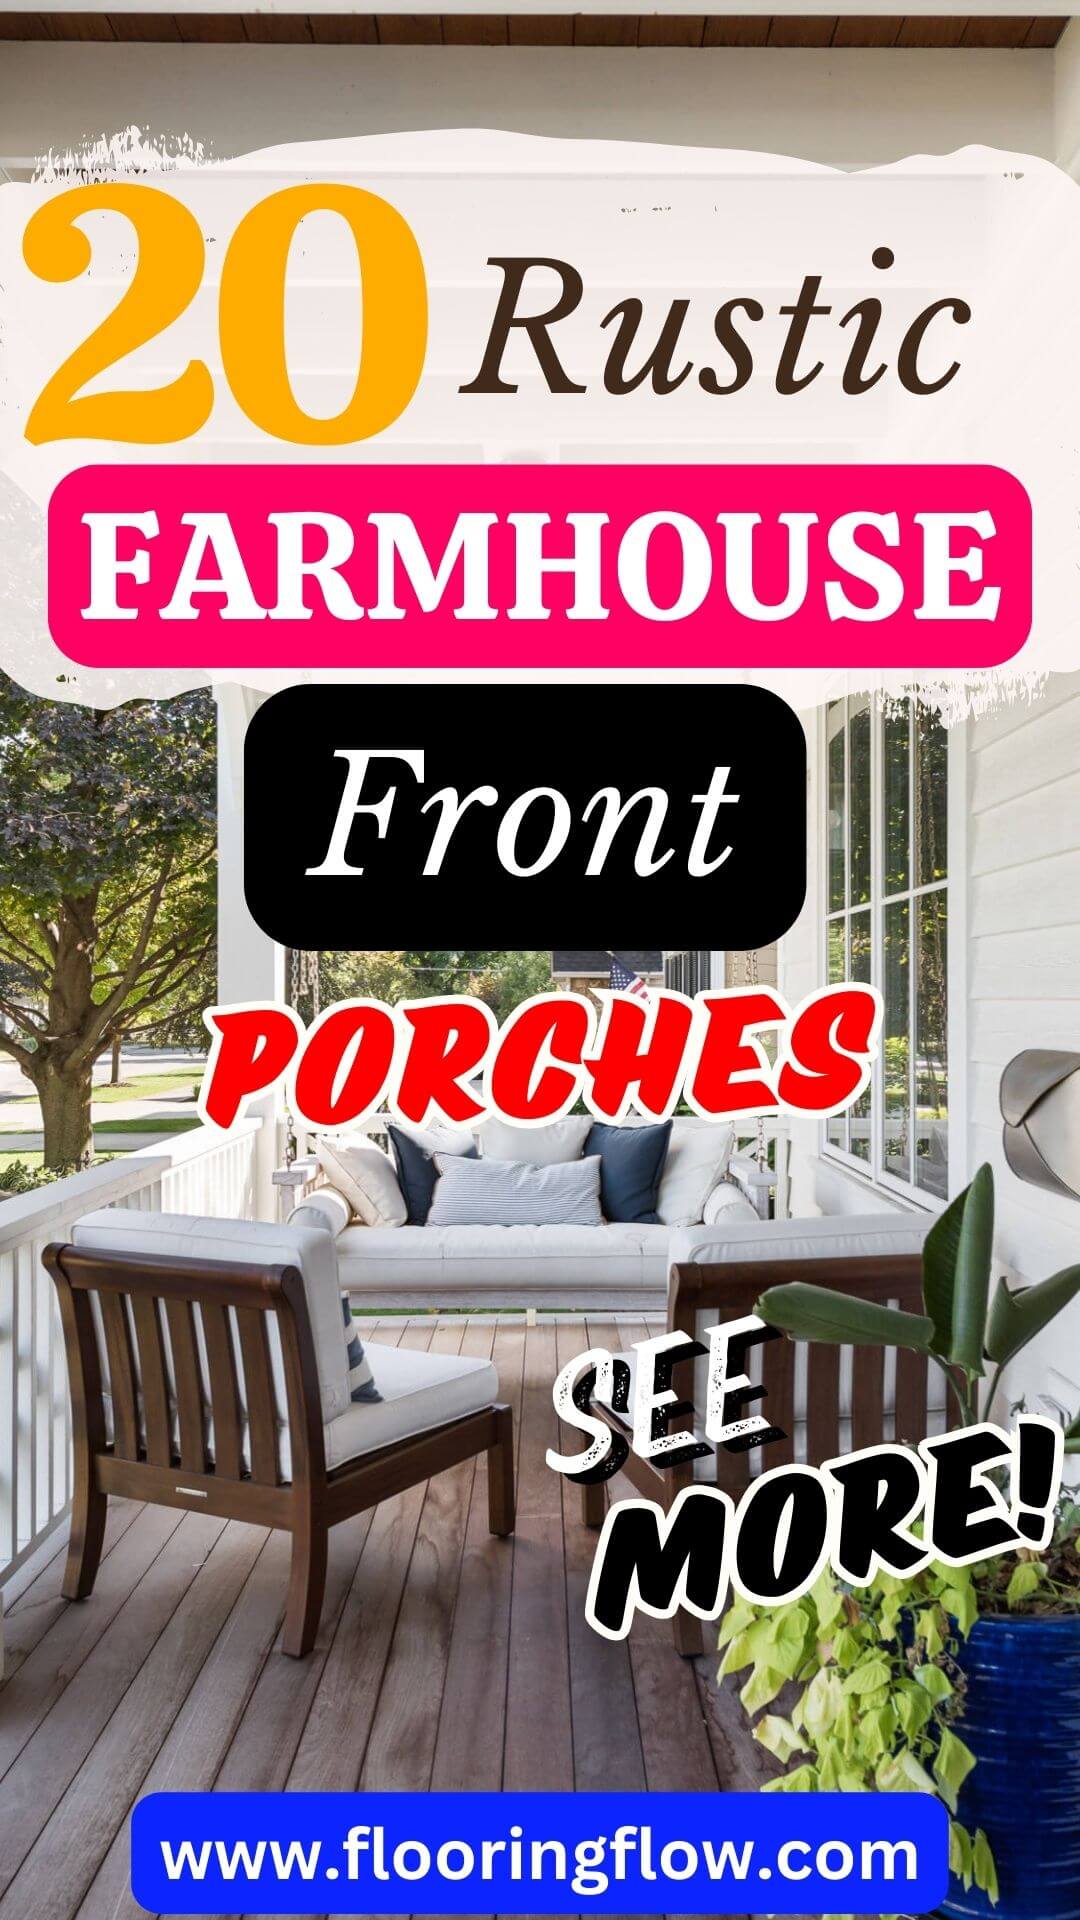 Enchanting Rustic Farmhouse Front Porches